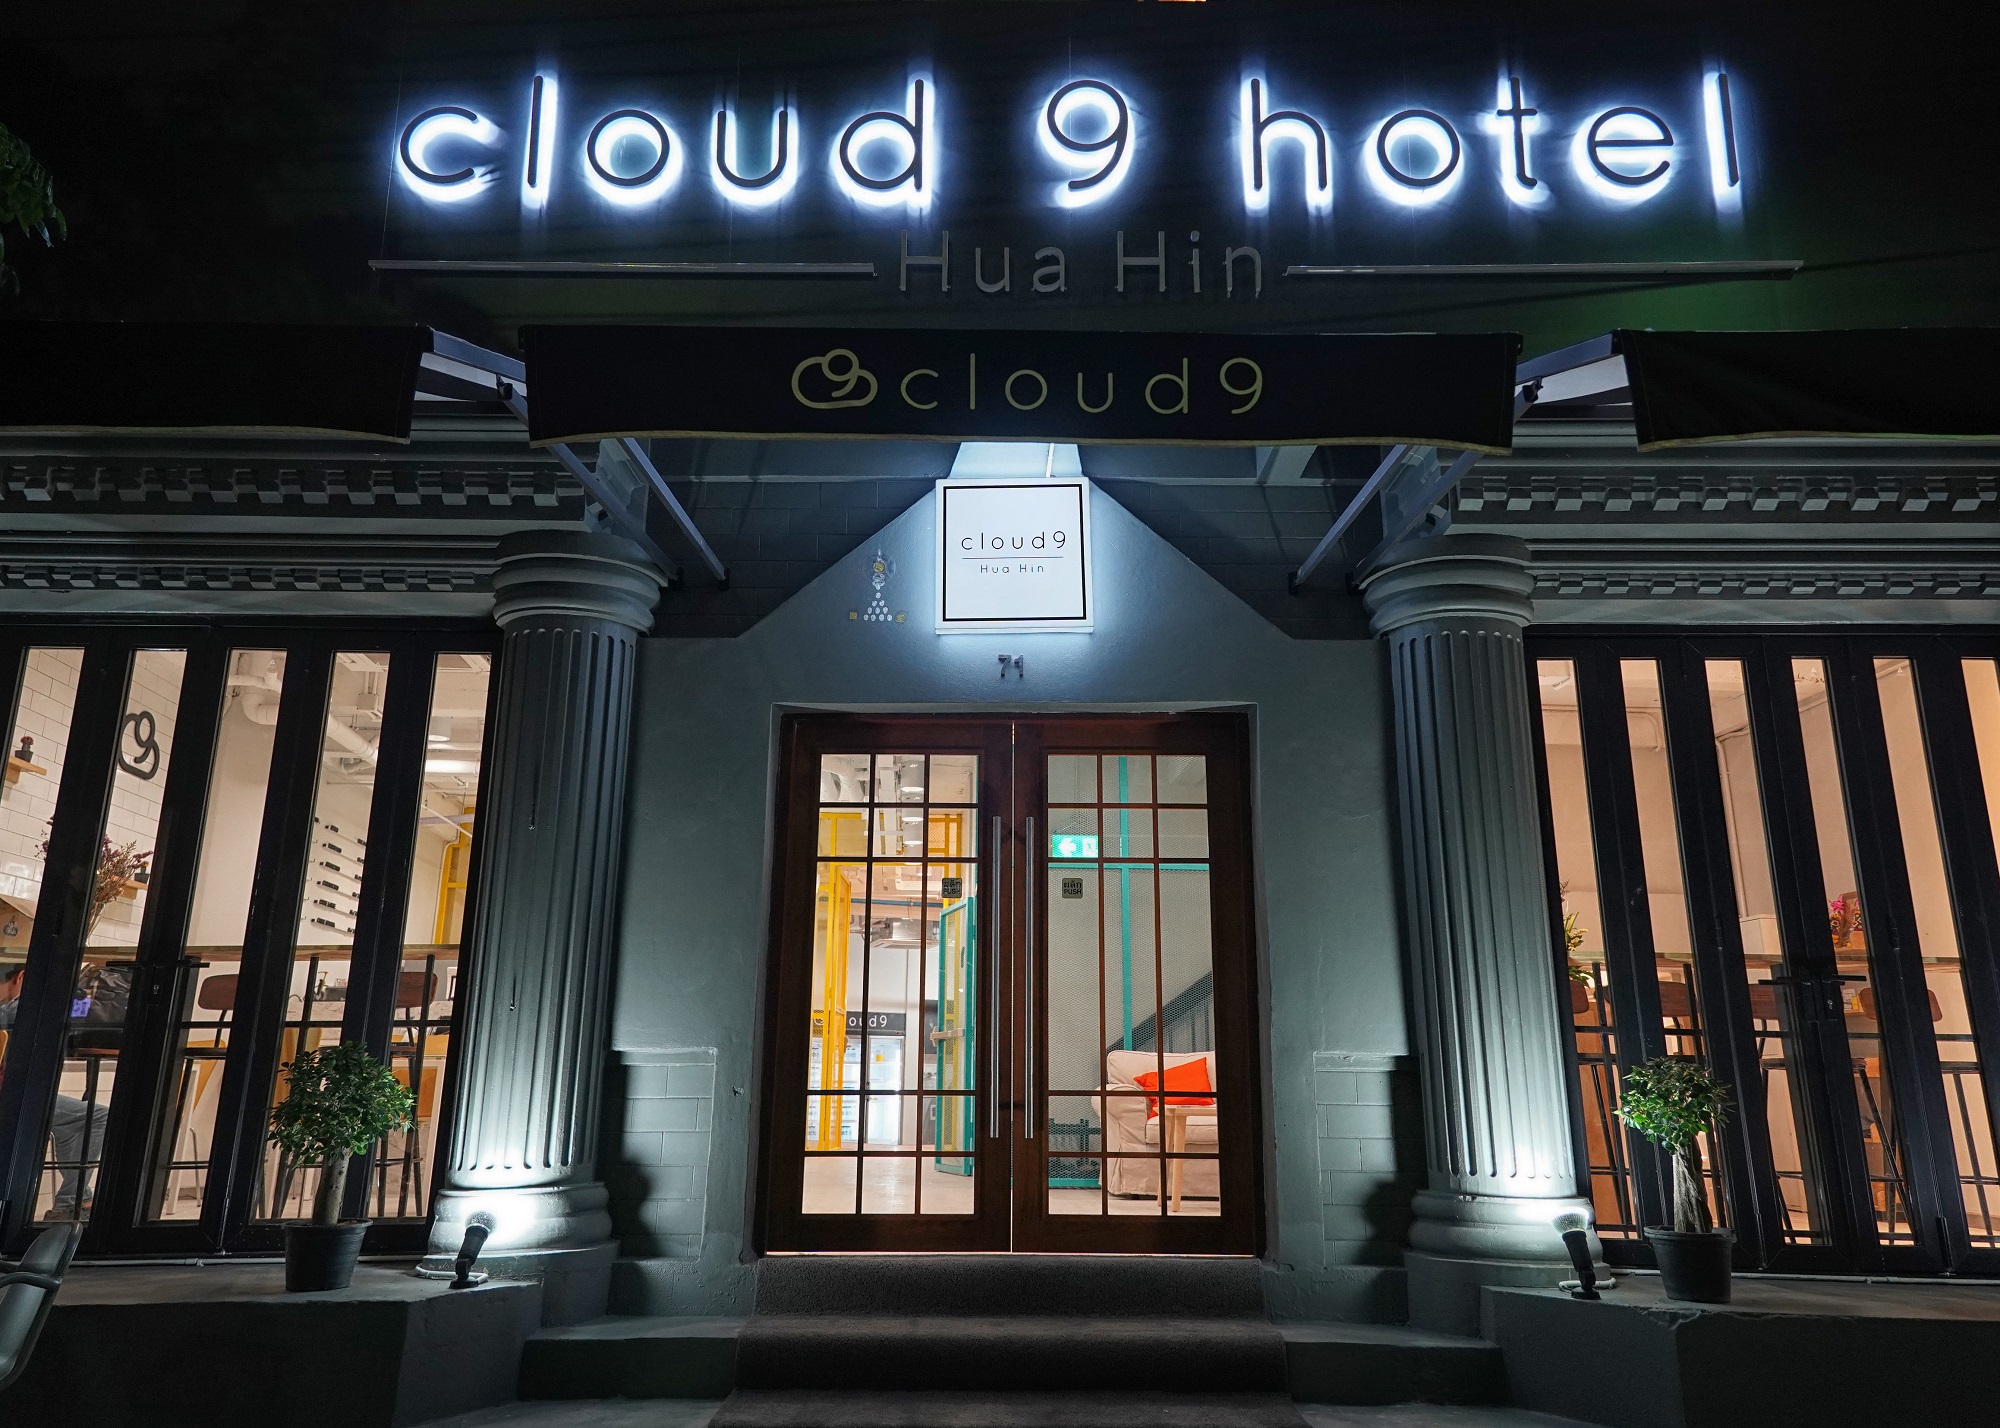 โรงแรม Cloud9 (คลาวด์ไนน์) หัวหิน อัพเลเวลอัดเทคโนโลยีจัดเต็ม เป็น Smart Hotel รับ New Normal